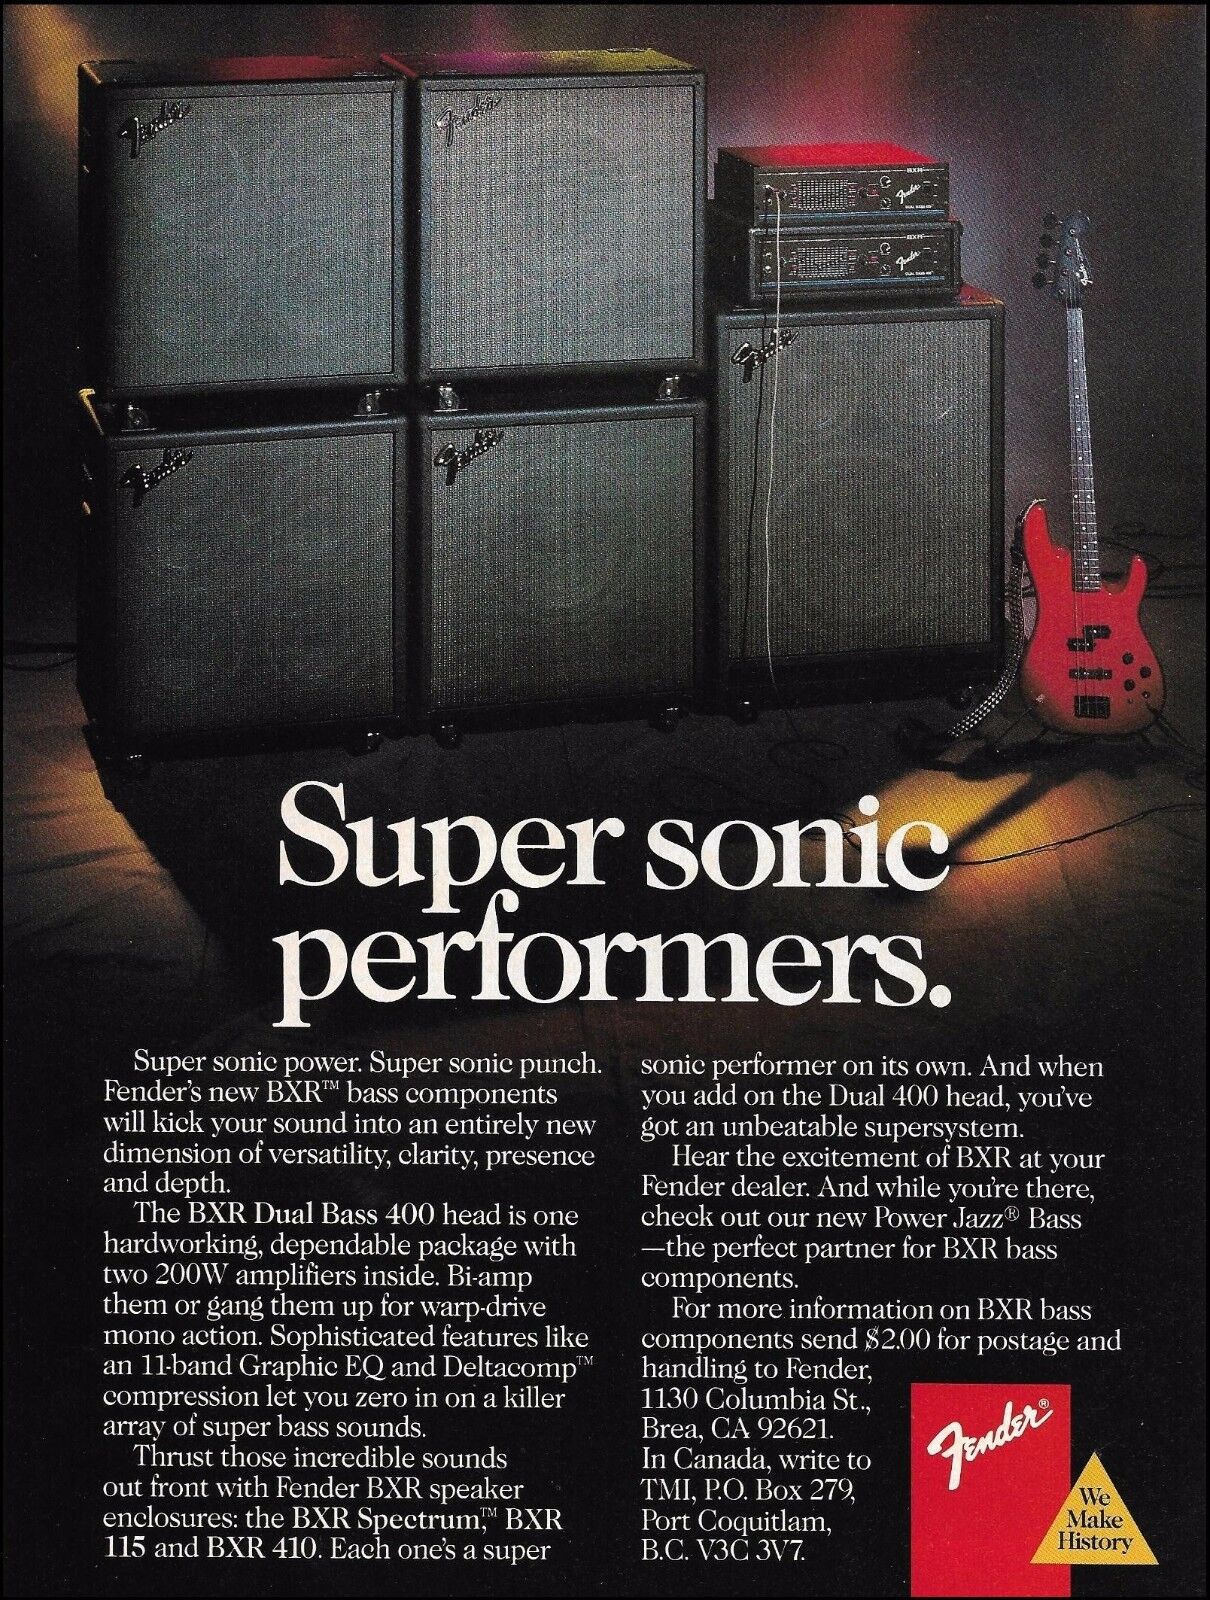 Fender BXR Series Bass Guitar Amp 1988 ad 8 x 11 amplifier advertisement print